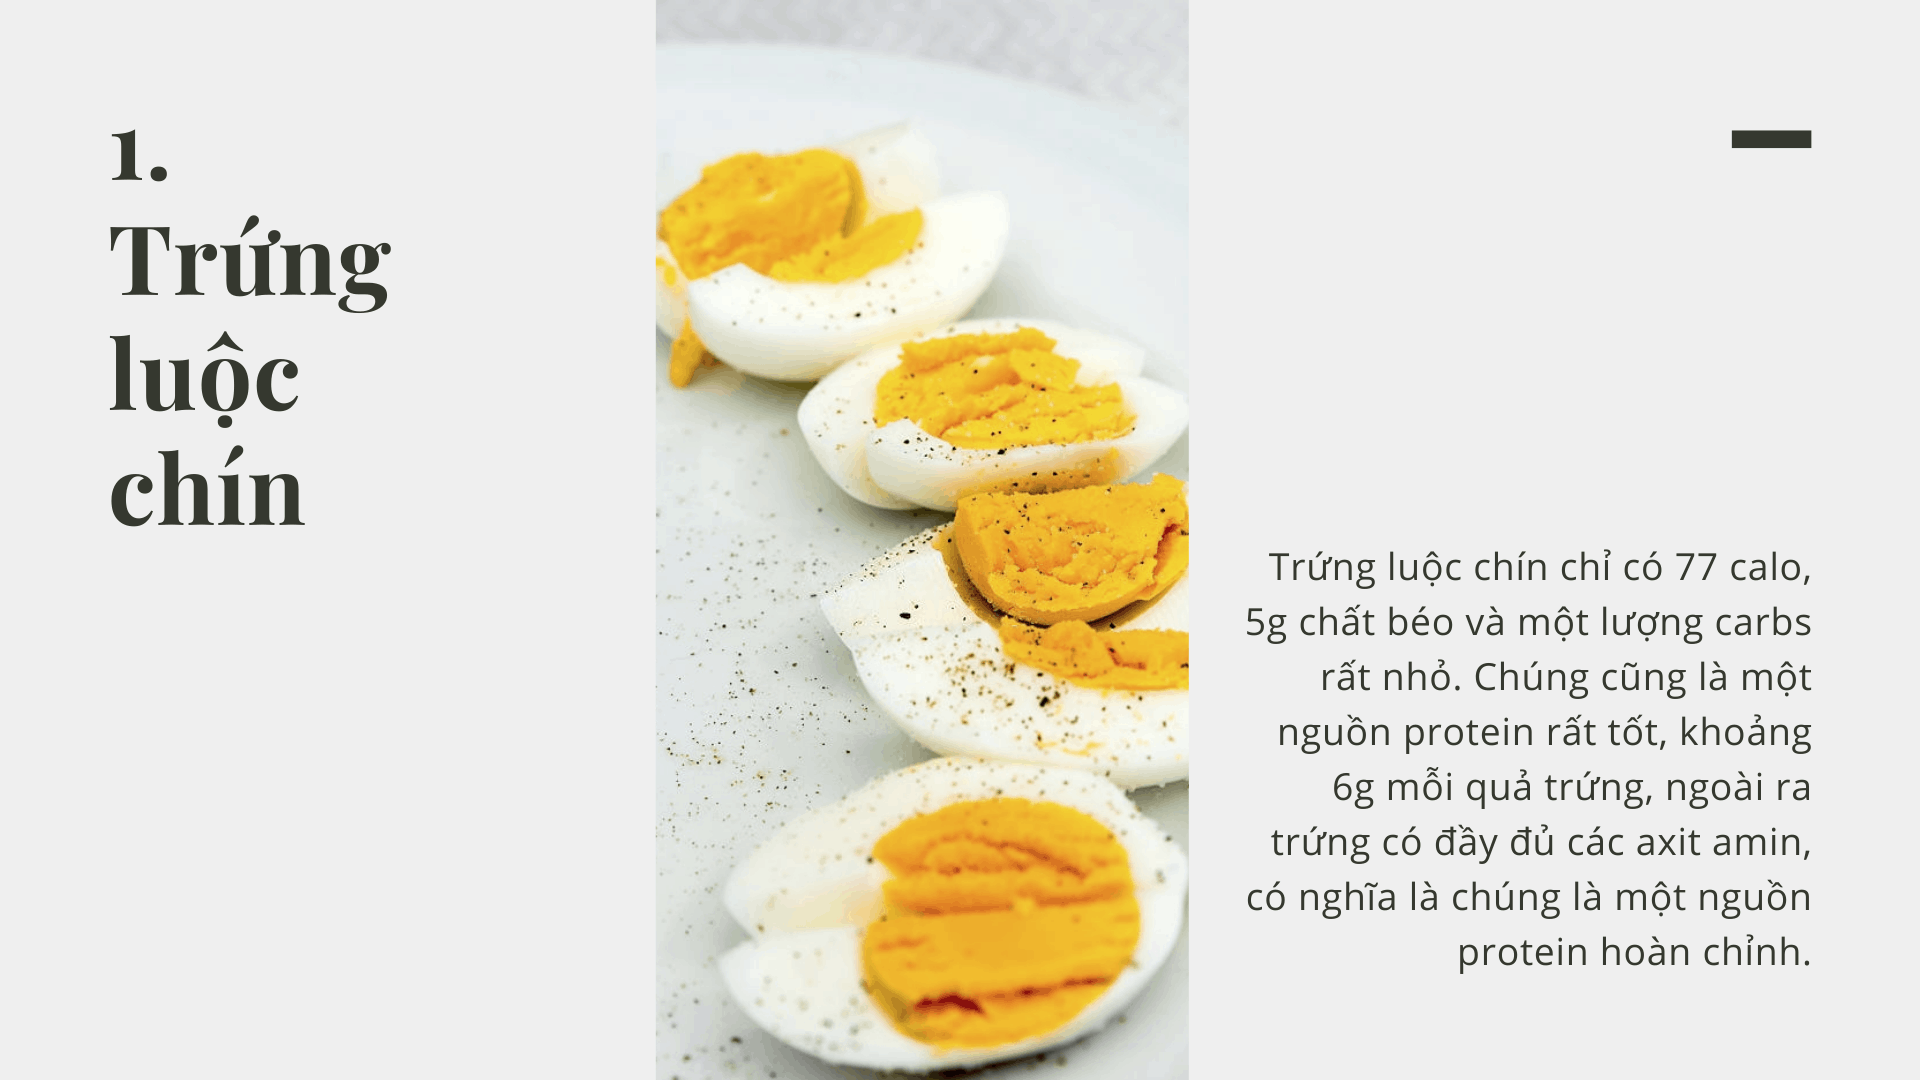 Ăn trứng luộc giúp bạn giảm cân